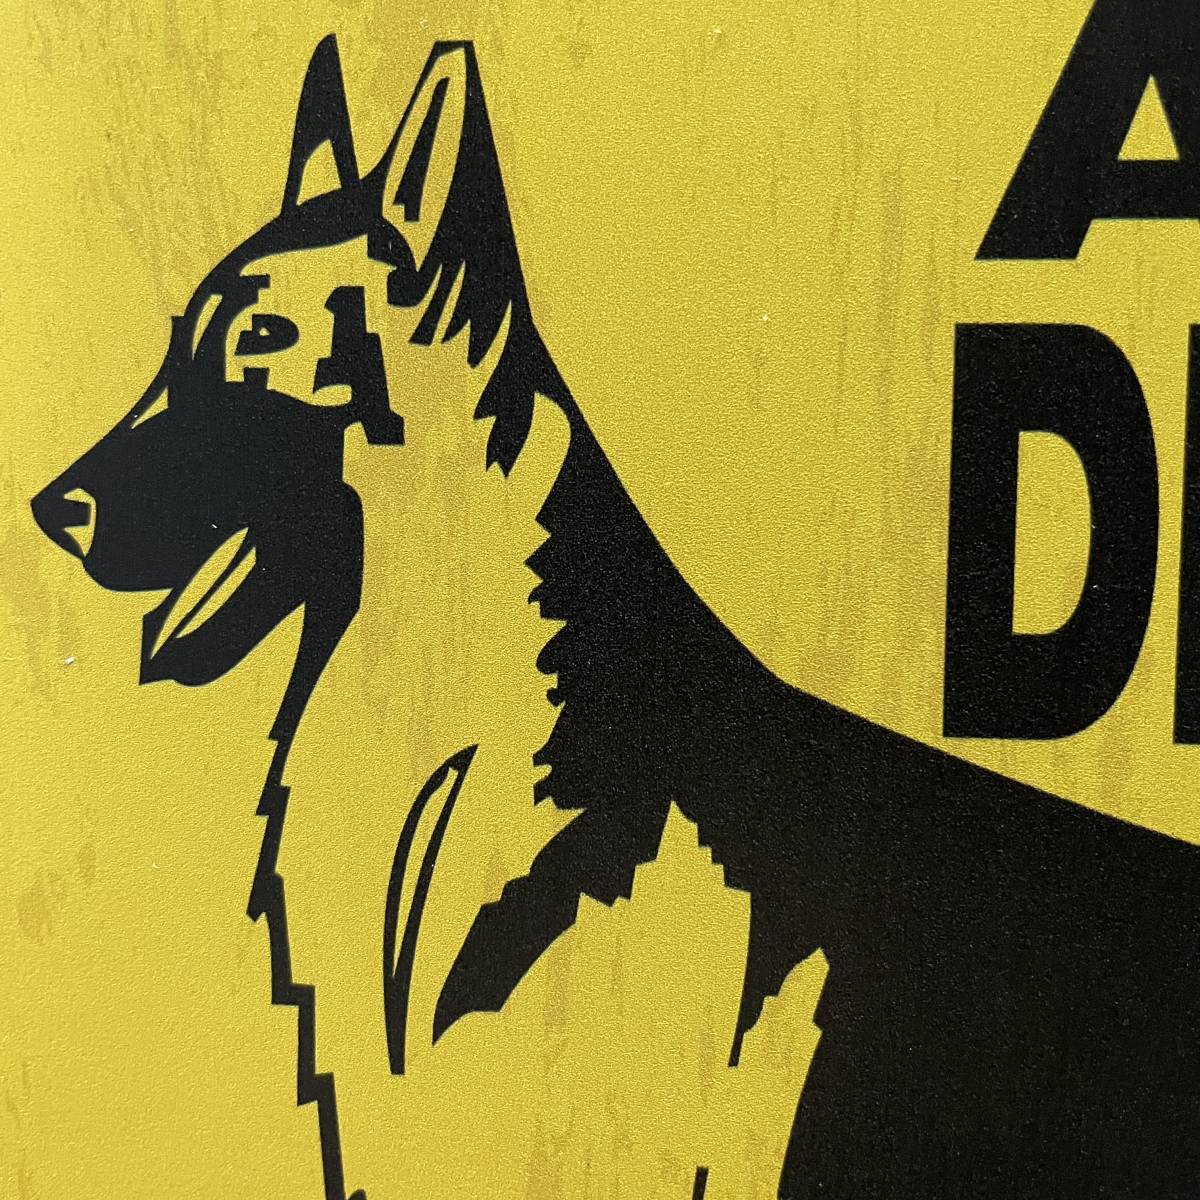 2枚 新品 壁掛けプレート BEWARE OF DOG 猛犬注意 犬に注意 警告版 防犯対策 危険 番犬 狂犬 いぬ イヌ 金属パネル ブリキ看板 シェパード_画像5